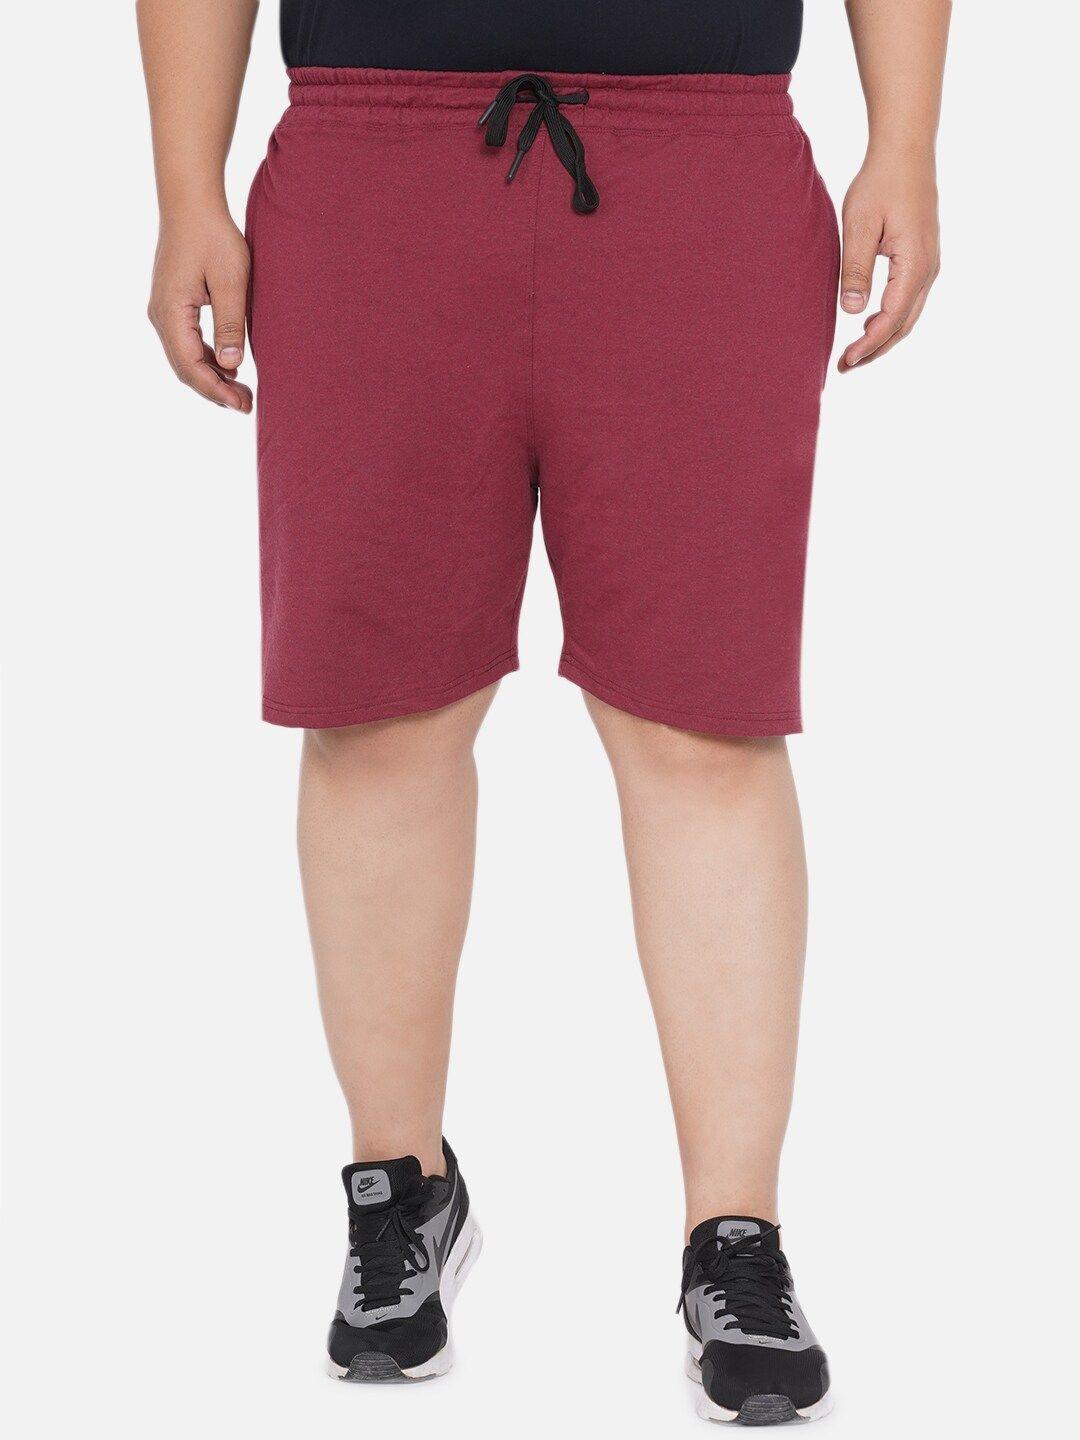 santonio-men-plus-size-pure-cotton-shorts